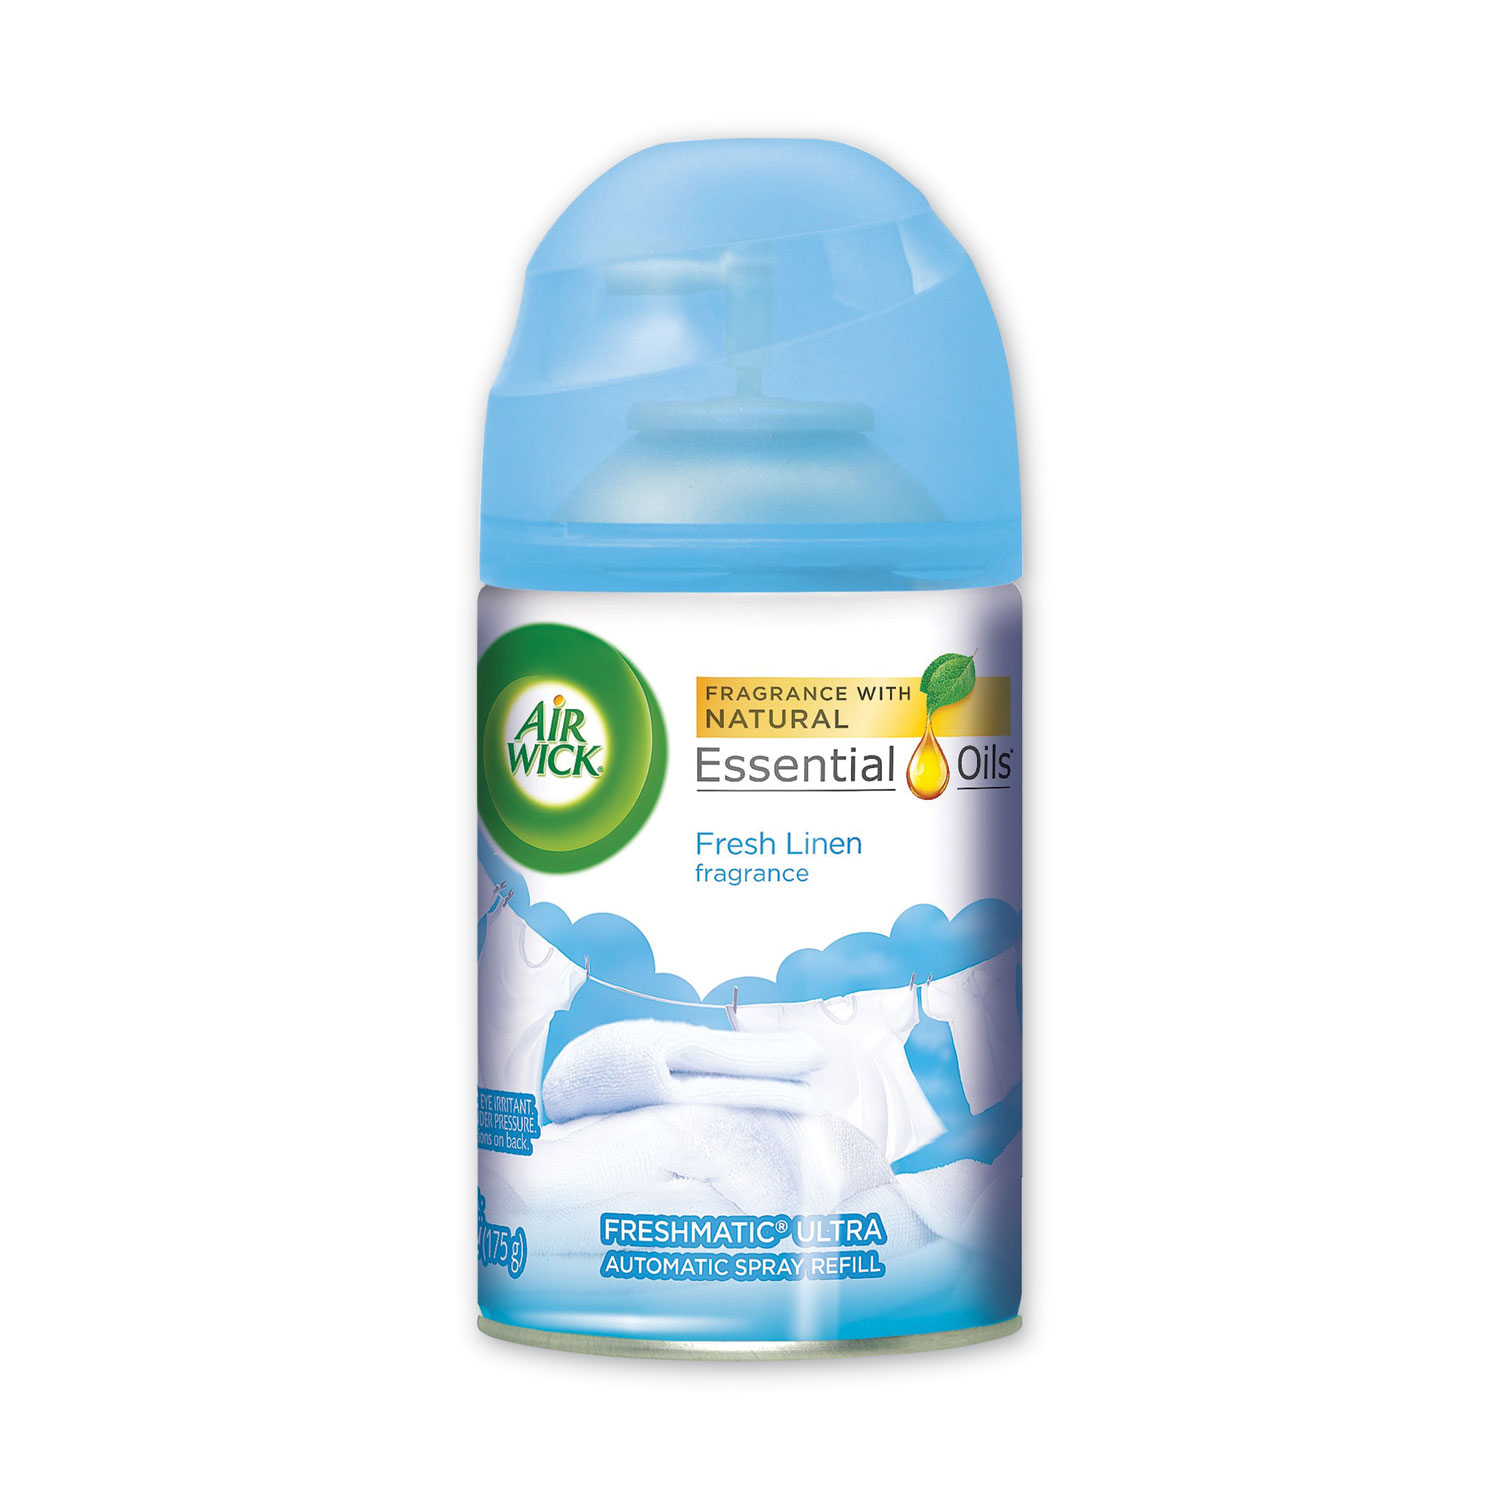  Air Wick 62338-82314 Freshmatic Ultra Automatic Spray Refill, Fresh Linen, Aerosol, 5.89 oz (RAC82314) 